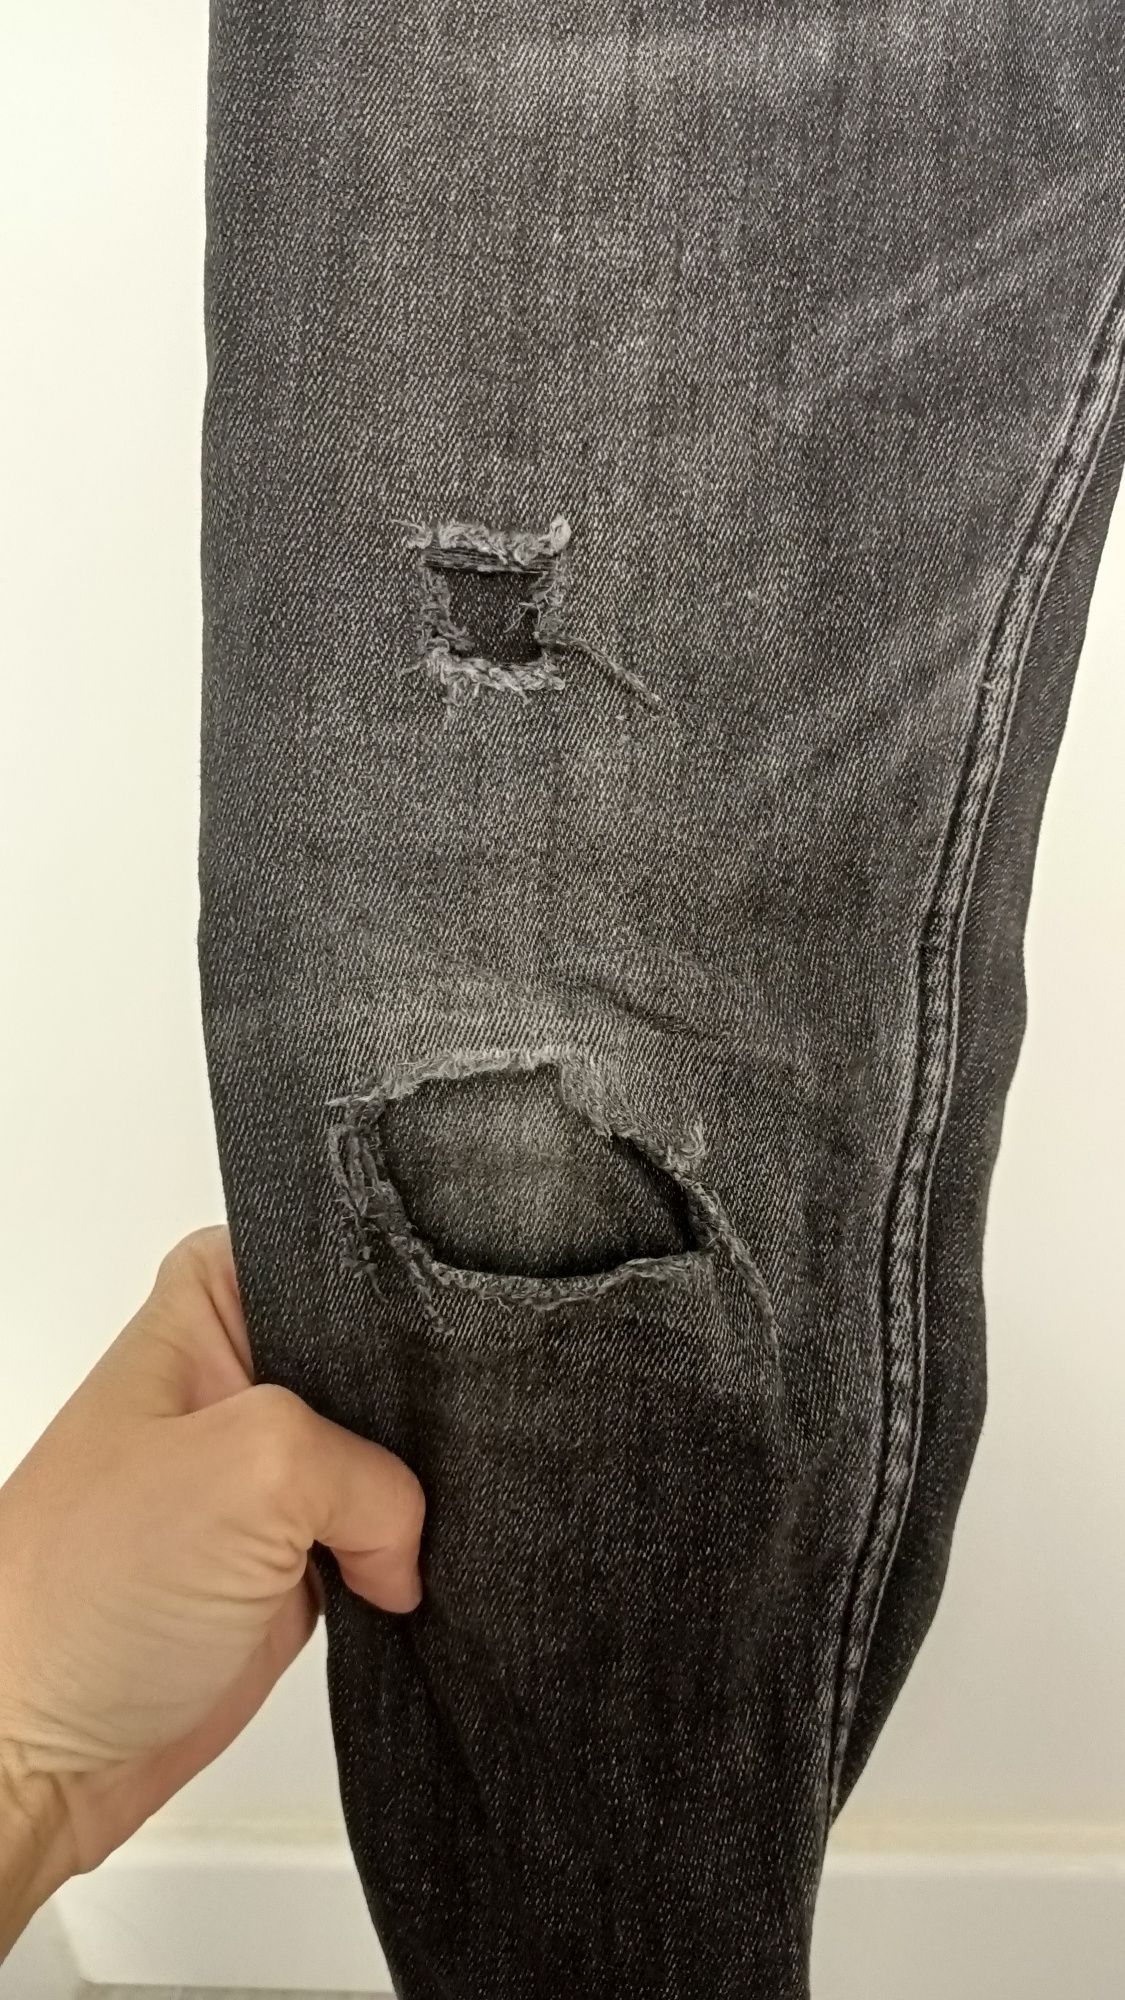 Spodnie jeans dla chłopca Zara 134